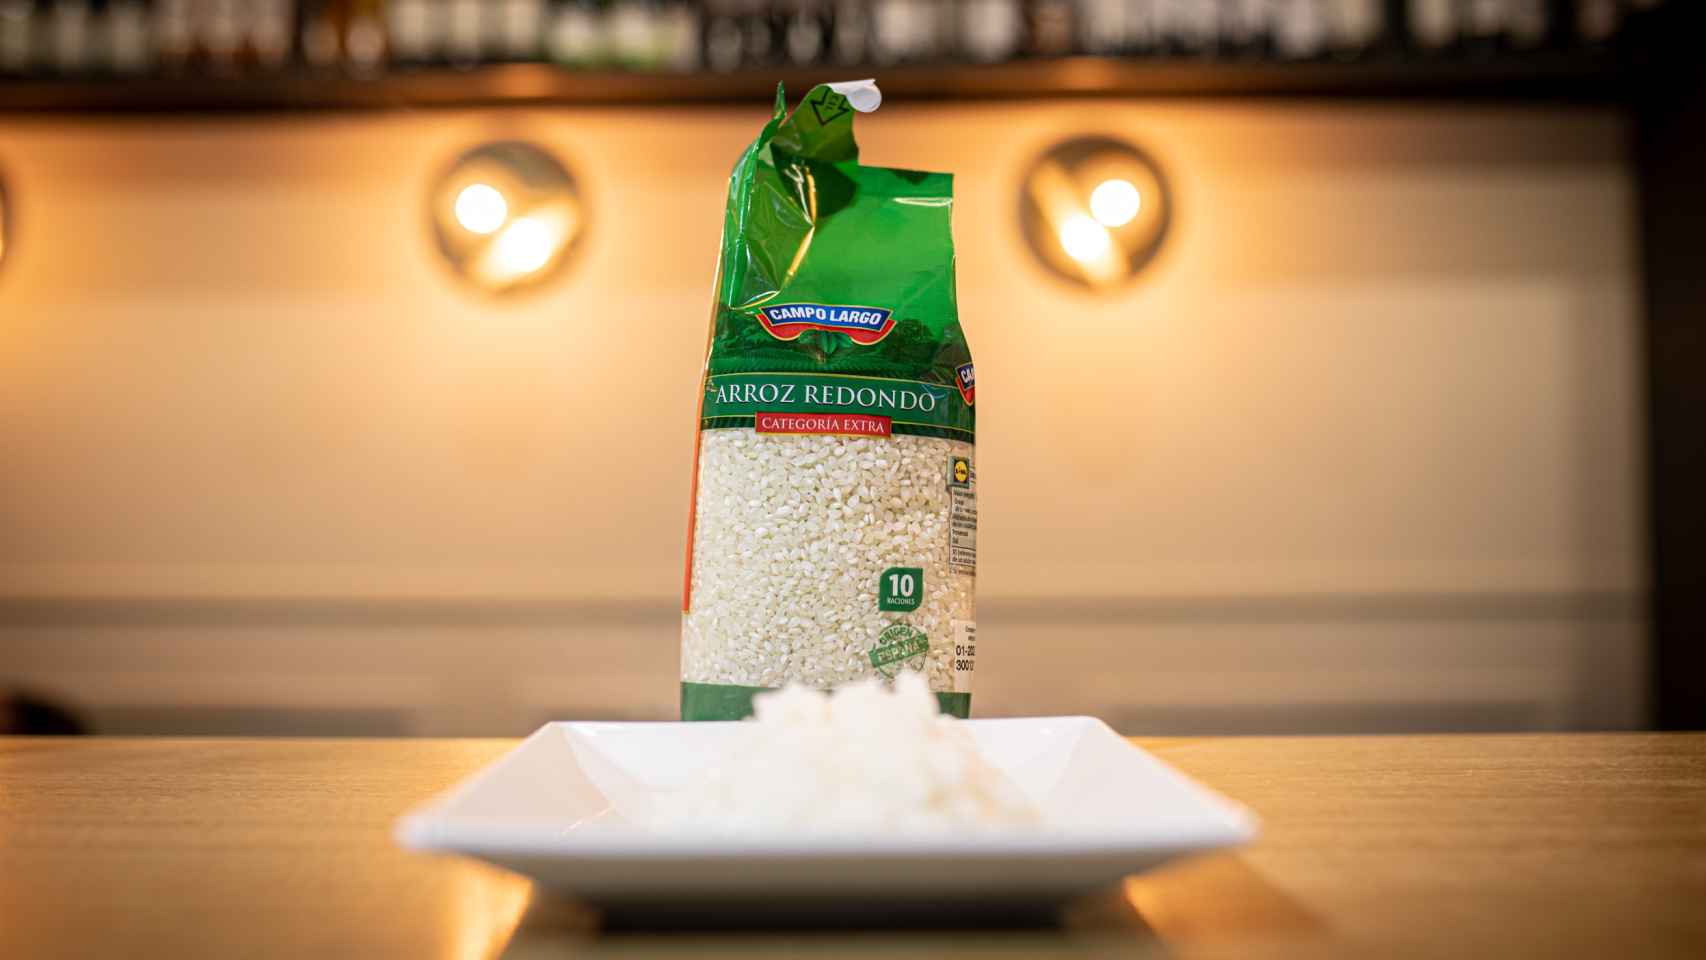 El arroz redondo de Campo Largo, la marca blanca de Lidl.